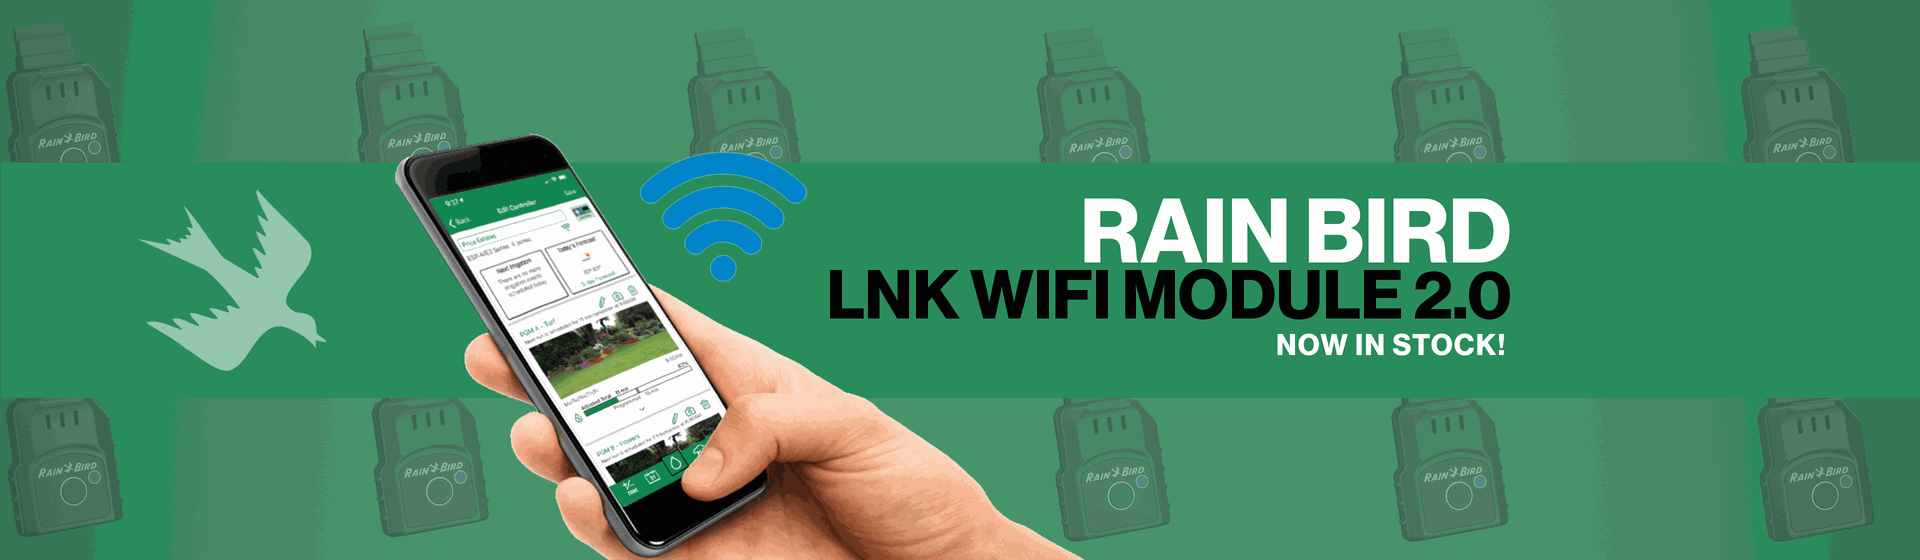 Rain Bird LNK WIFI Module 2.0 Now In Stock